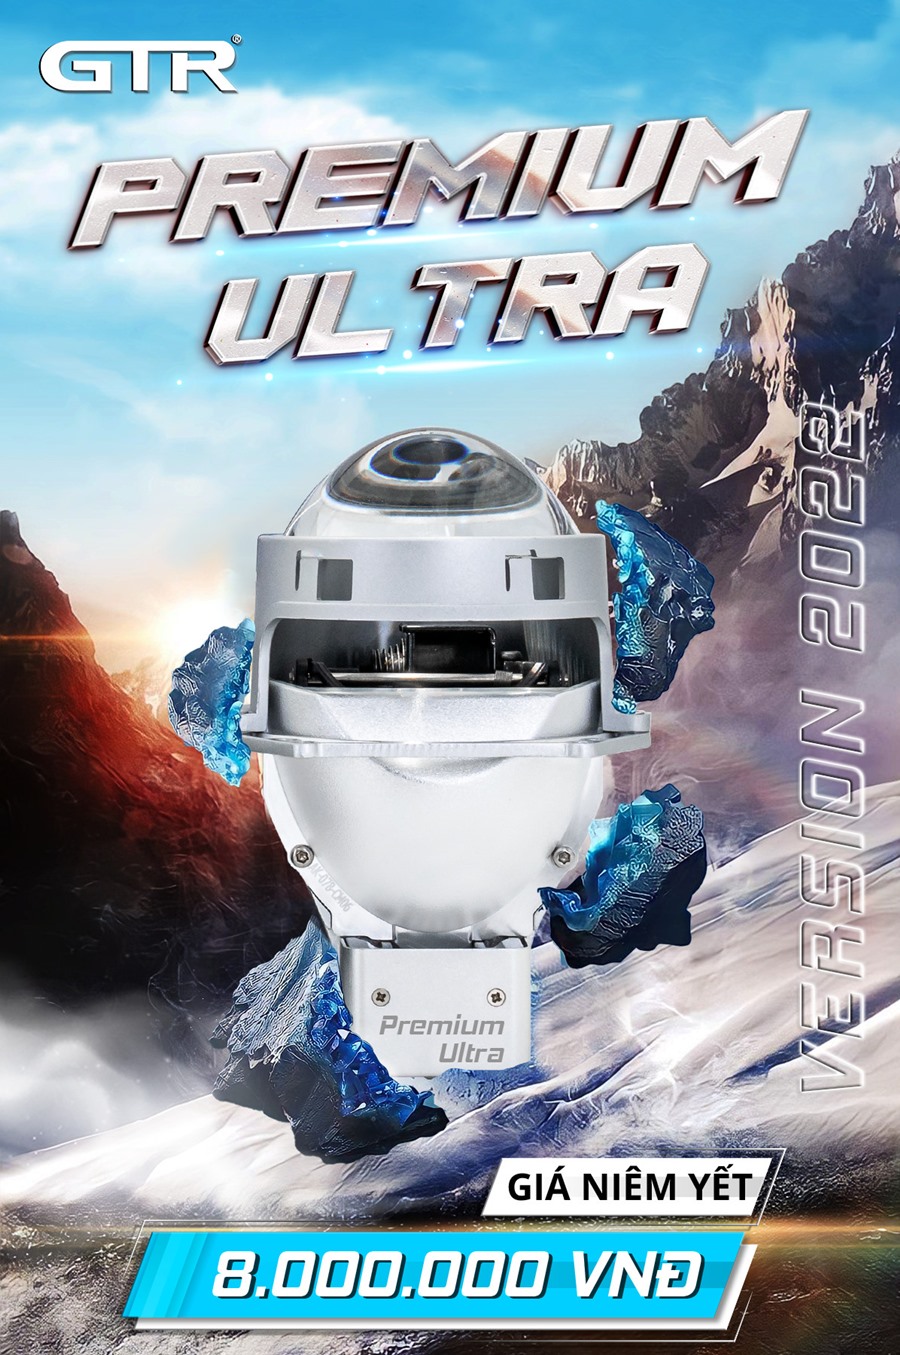 【HOT 】 Bi Led GTR Premium Ultra 2022 - Nhiều ưu điểm vượt trội